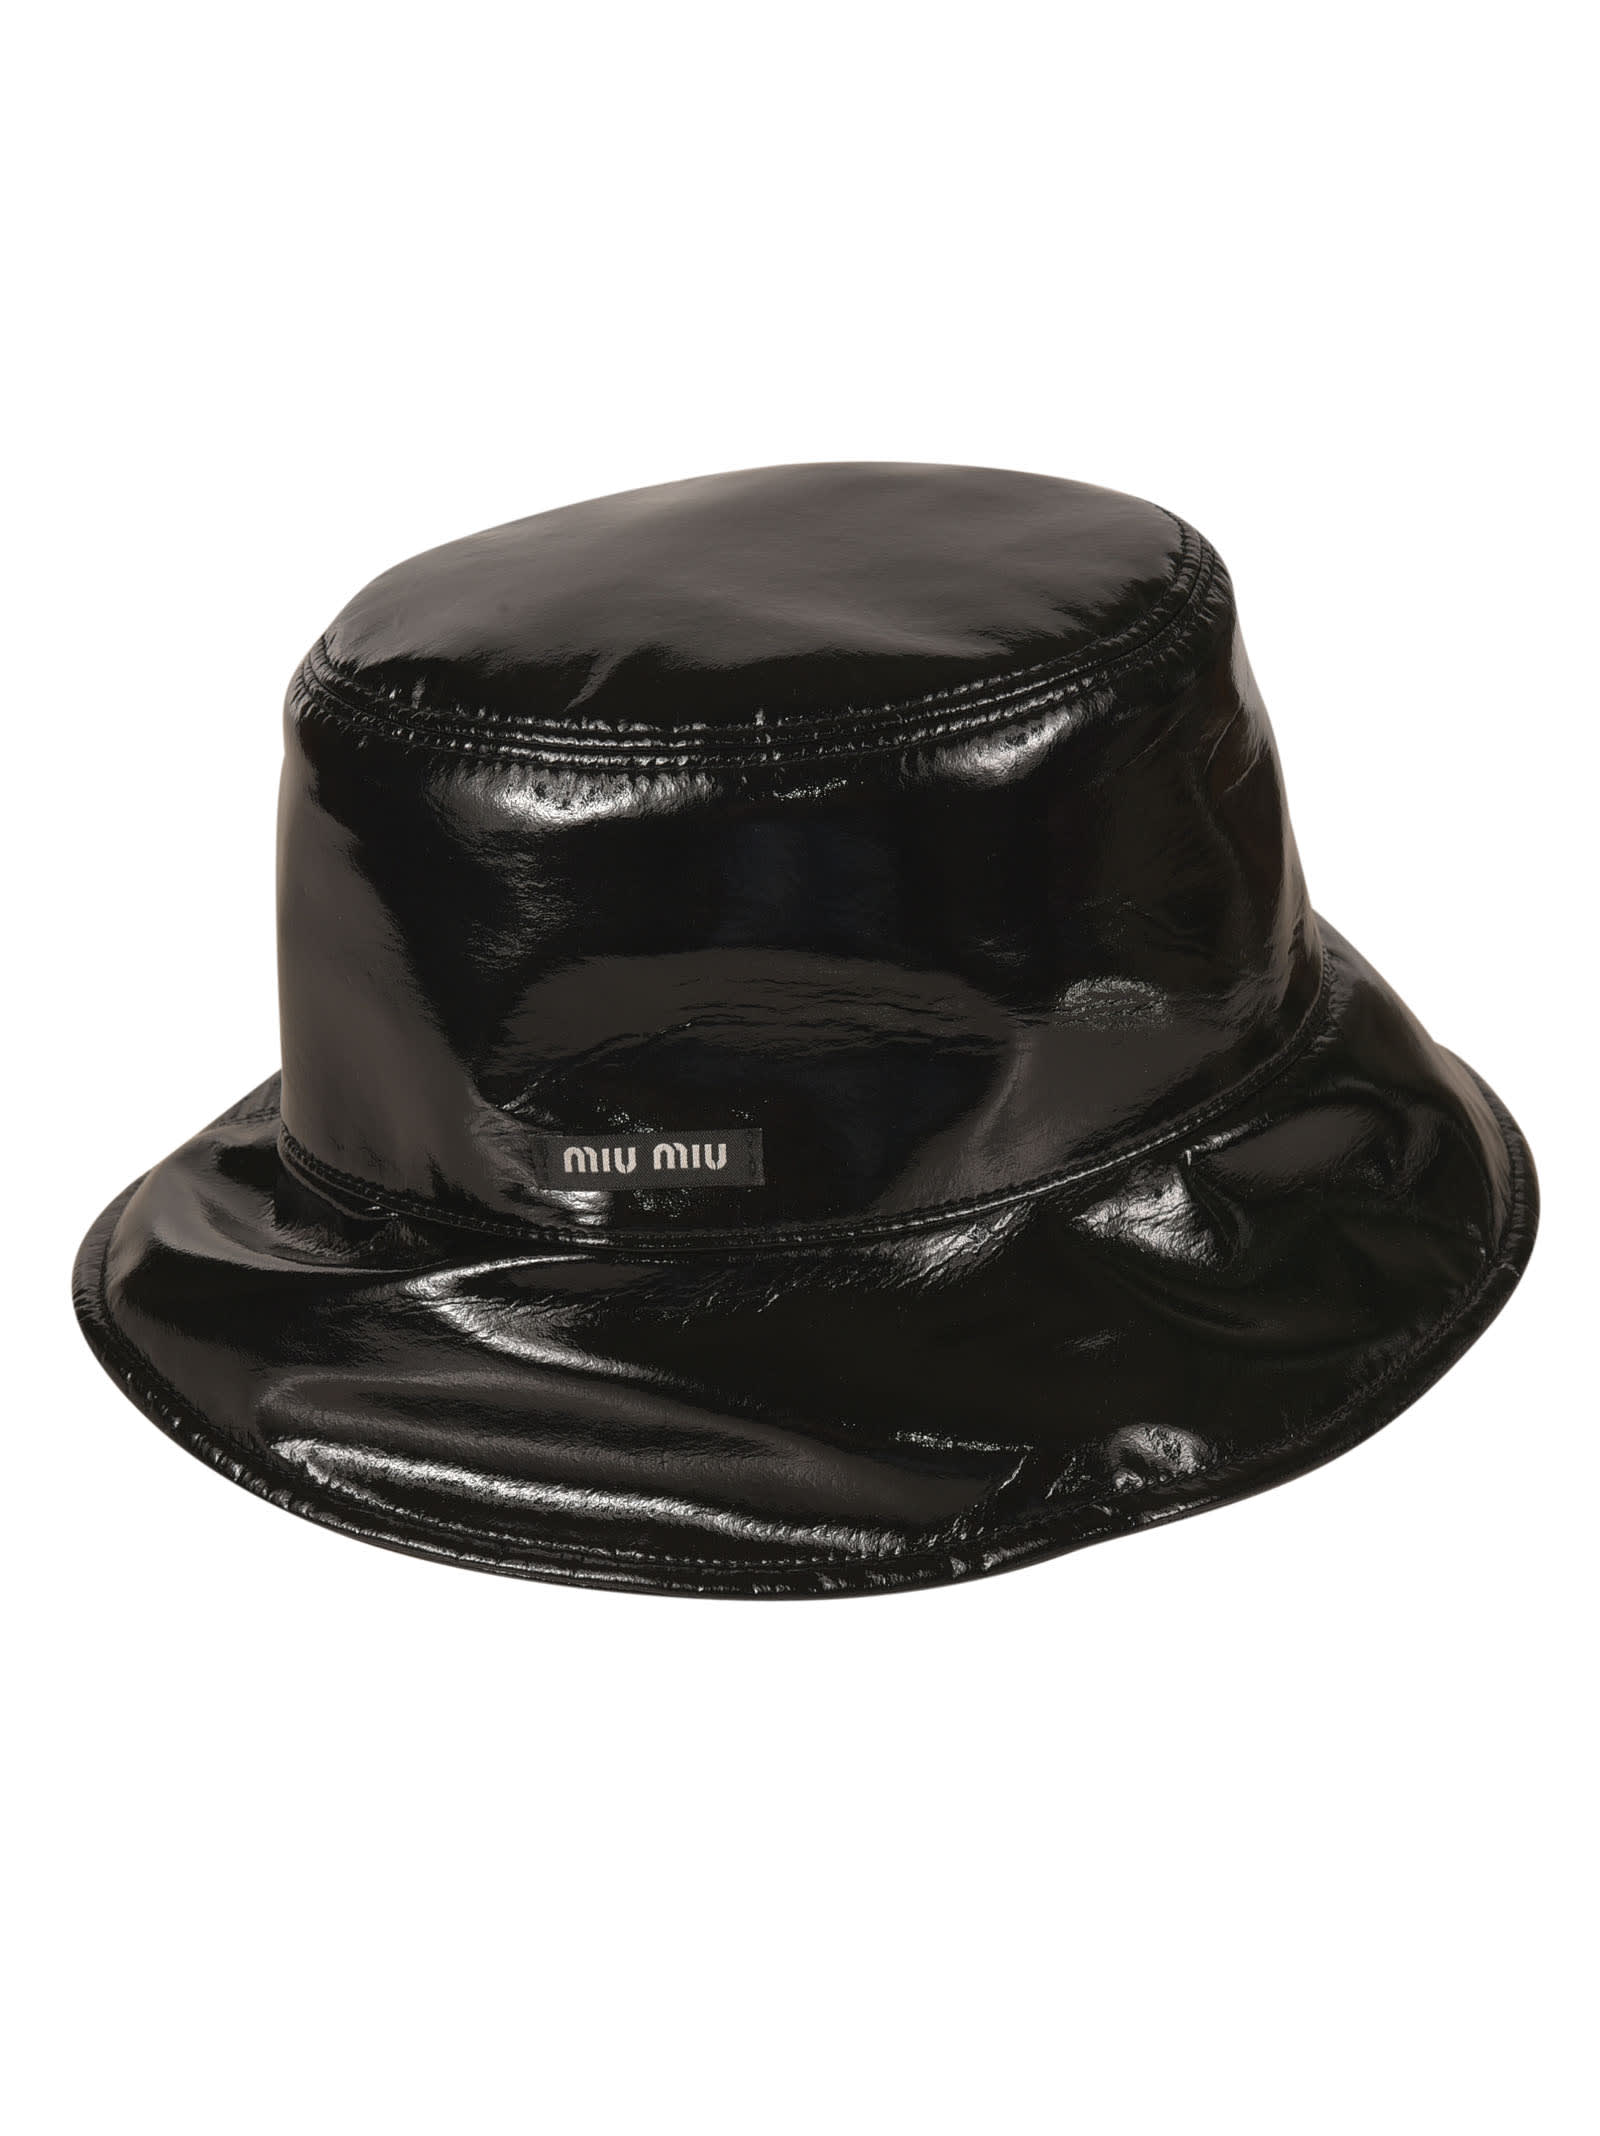 Miu Miu Glossy Bucket Hat